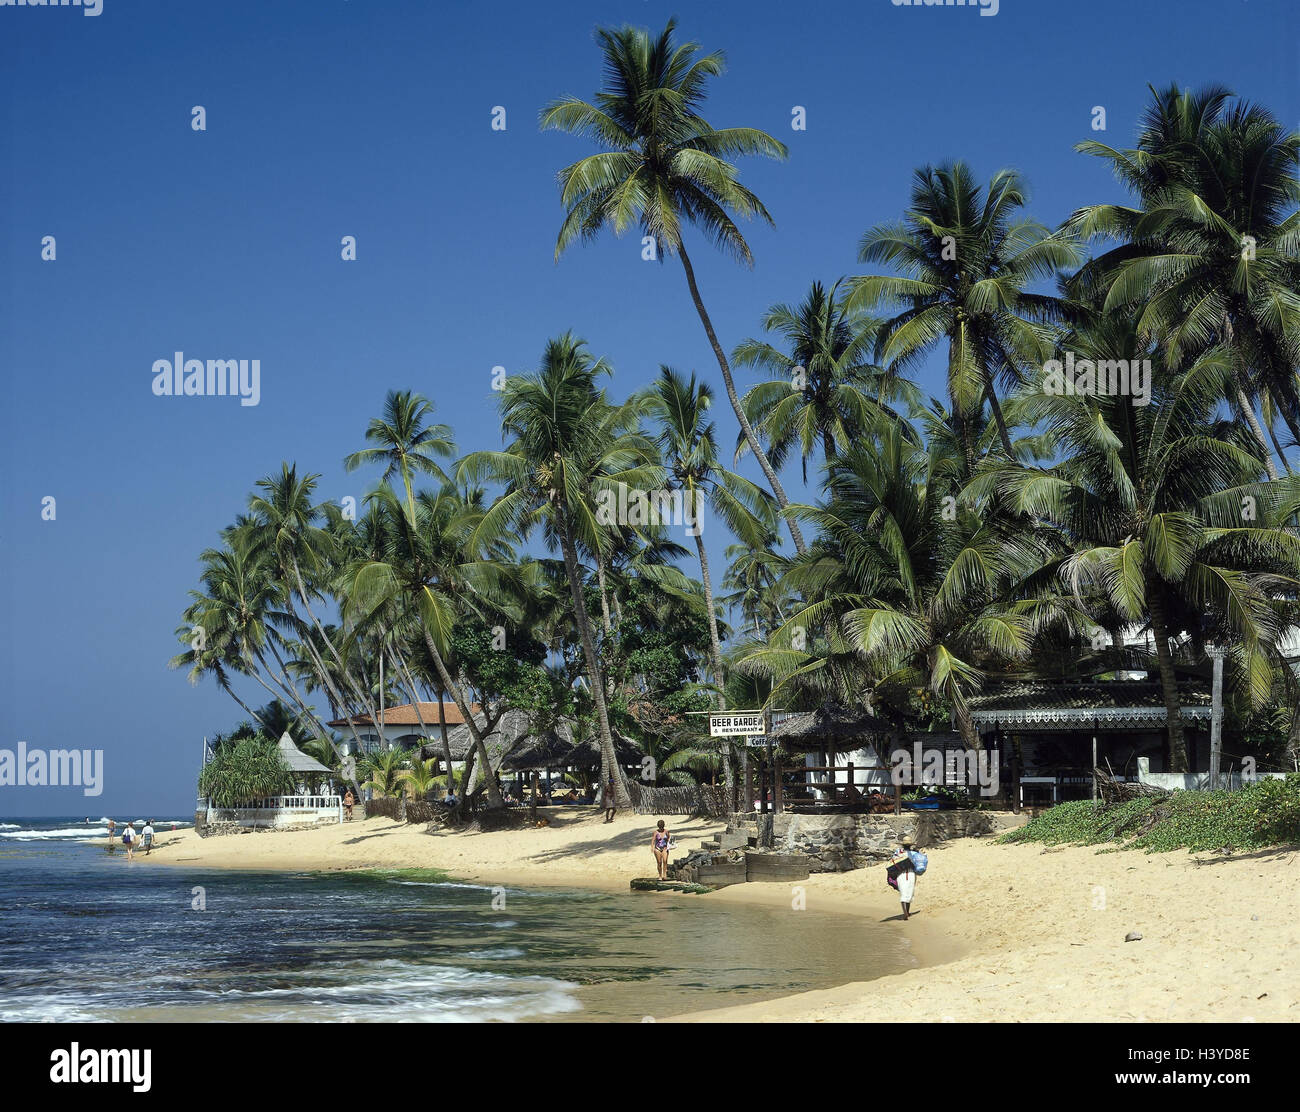 Hikkaduwa, Sri Lanka, la plage de l'hôtel, les baigneurs, les sections locales, île de l'état, de l'Asie du Sud, Ceylan, plage de sable, plage, palmiers, plage, tourisme, vacances, loisirs, tourisme, installations de l'hôtel Banque D'Images